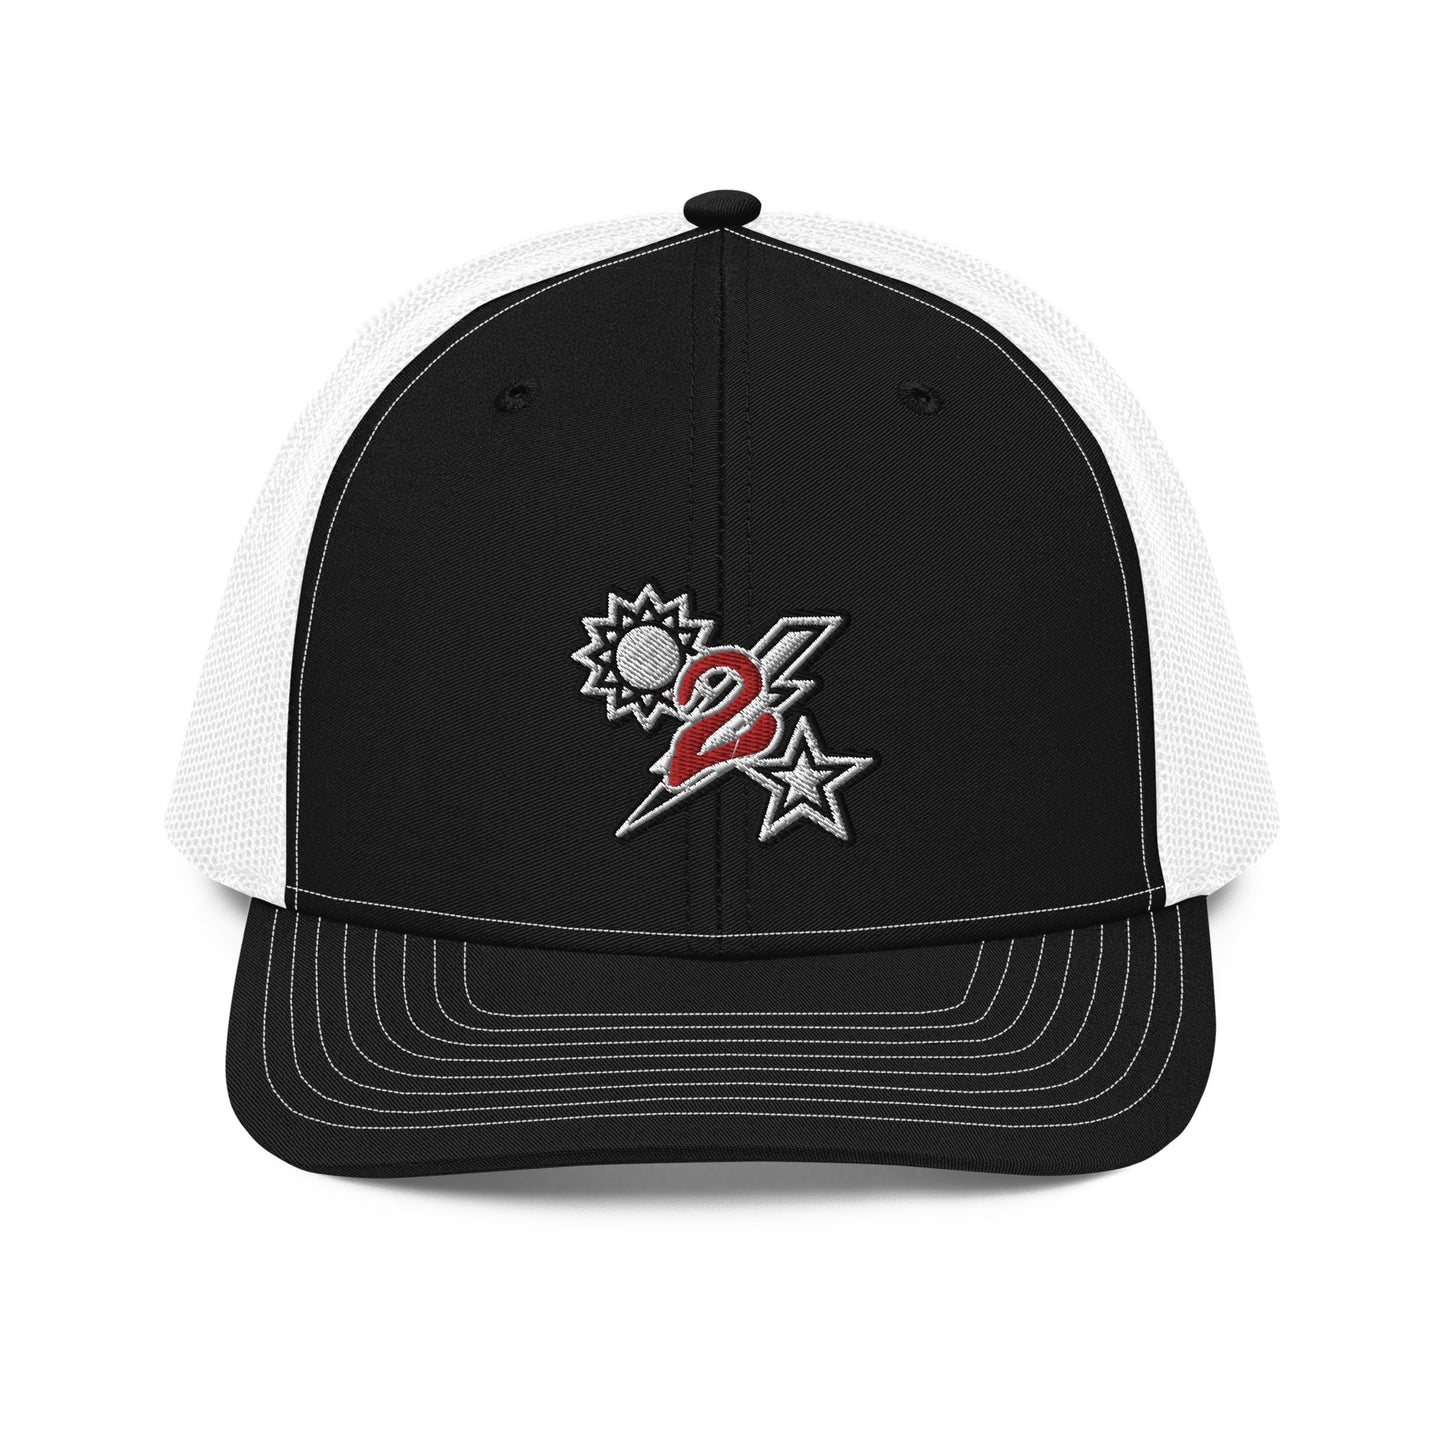 2d Battalion DUI Guts Trucker Hat